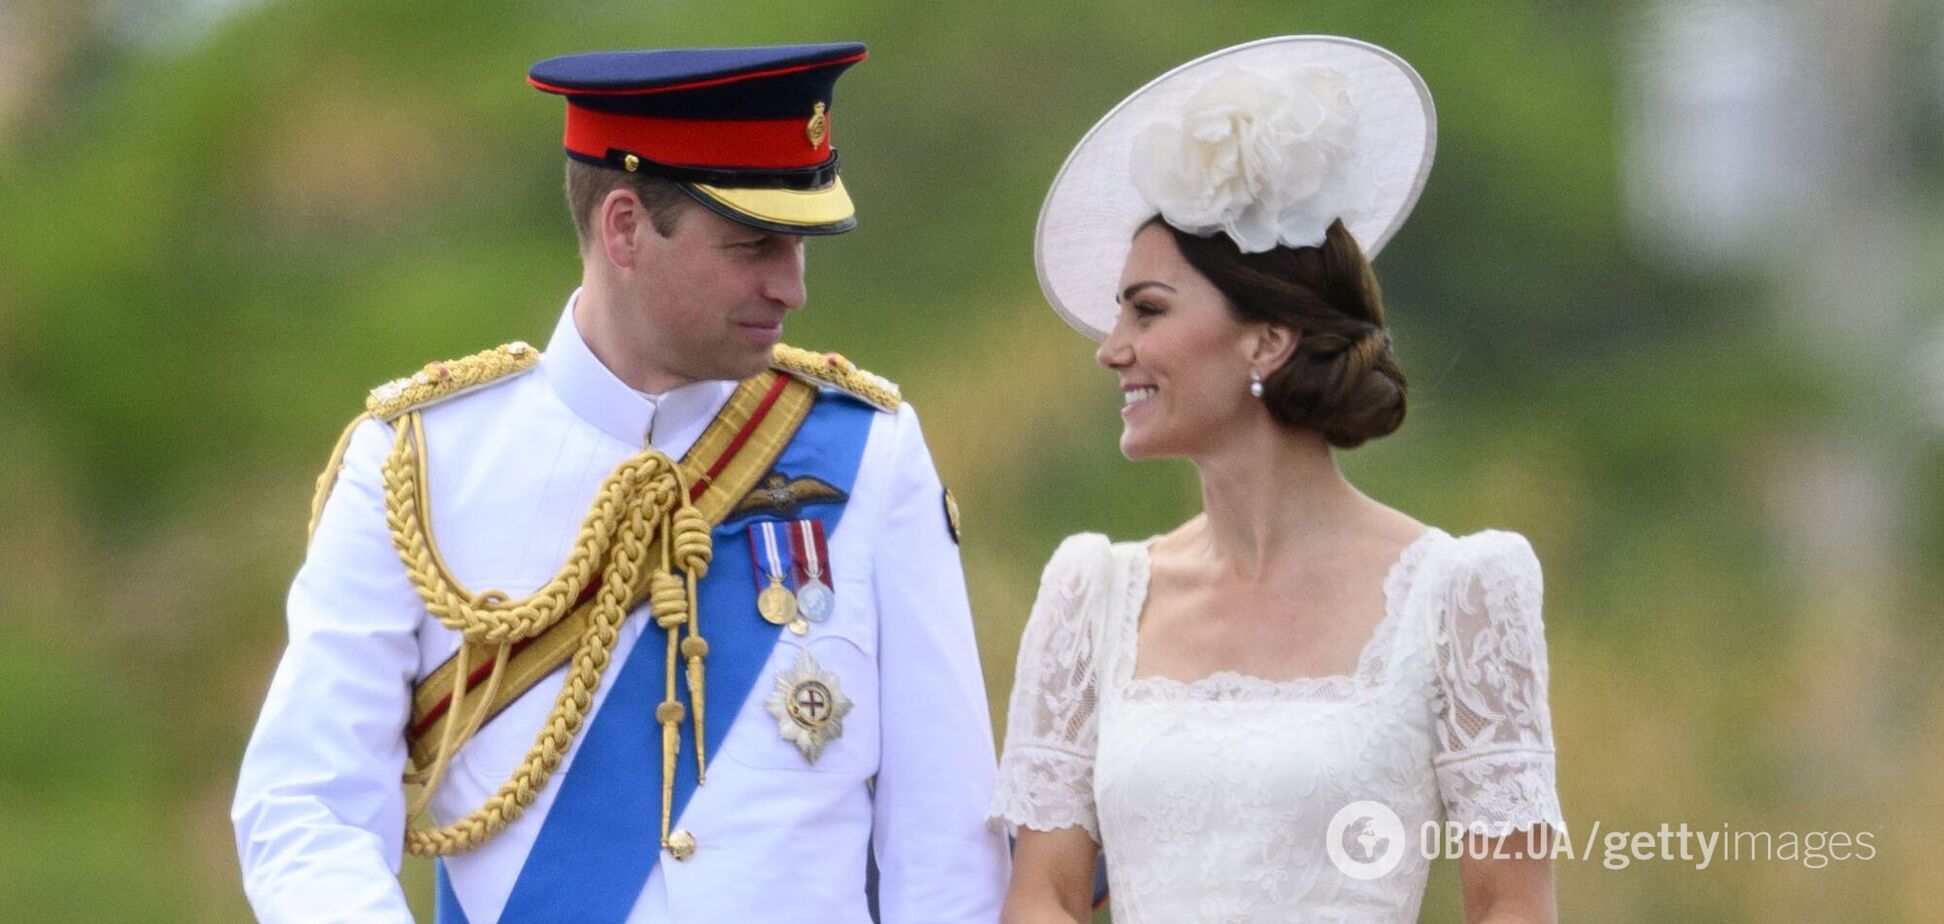 Стало известно, почему принц Уильям никогда не носит обручальное кольцо, хотя Кейт Миддлтон свое не снимает